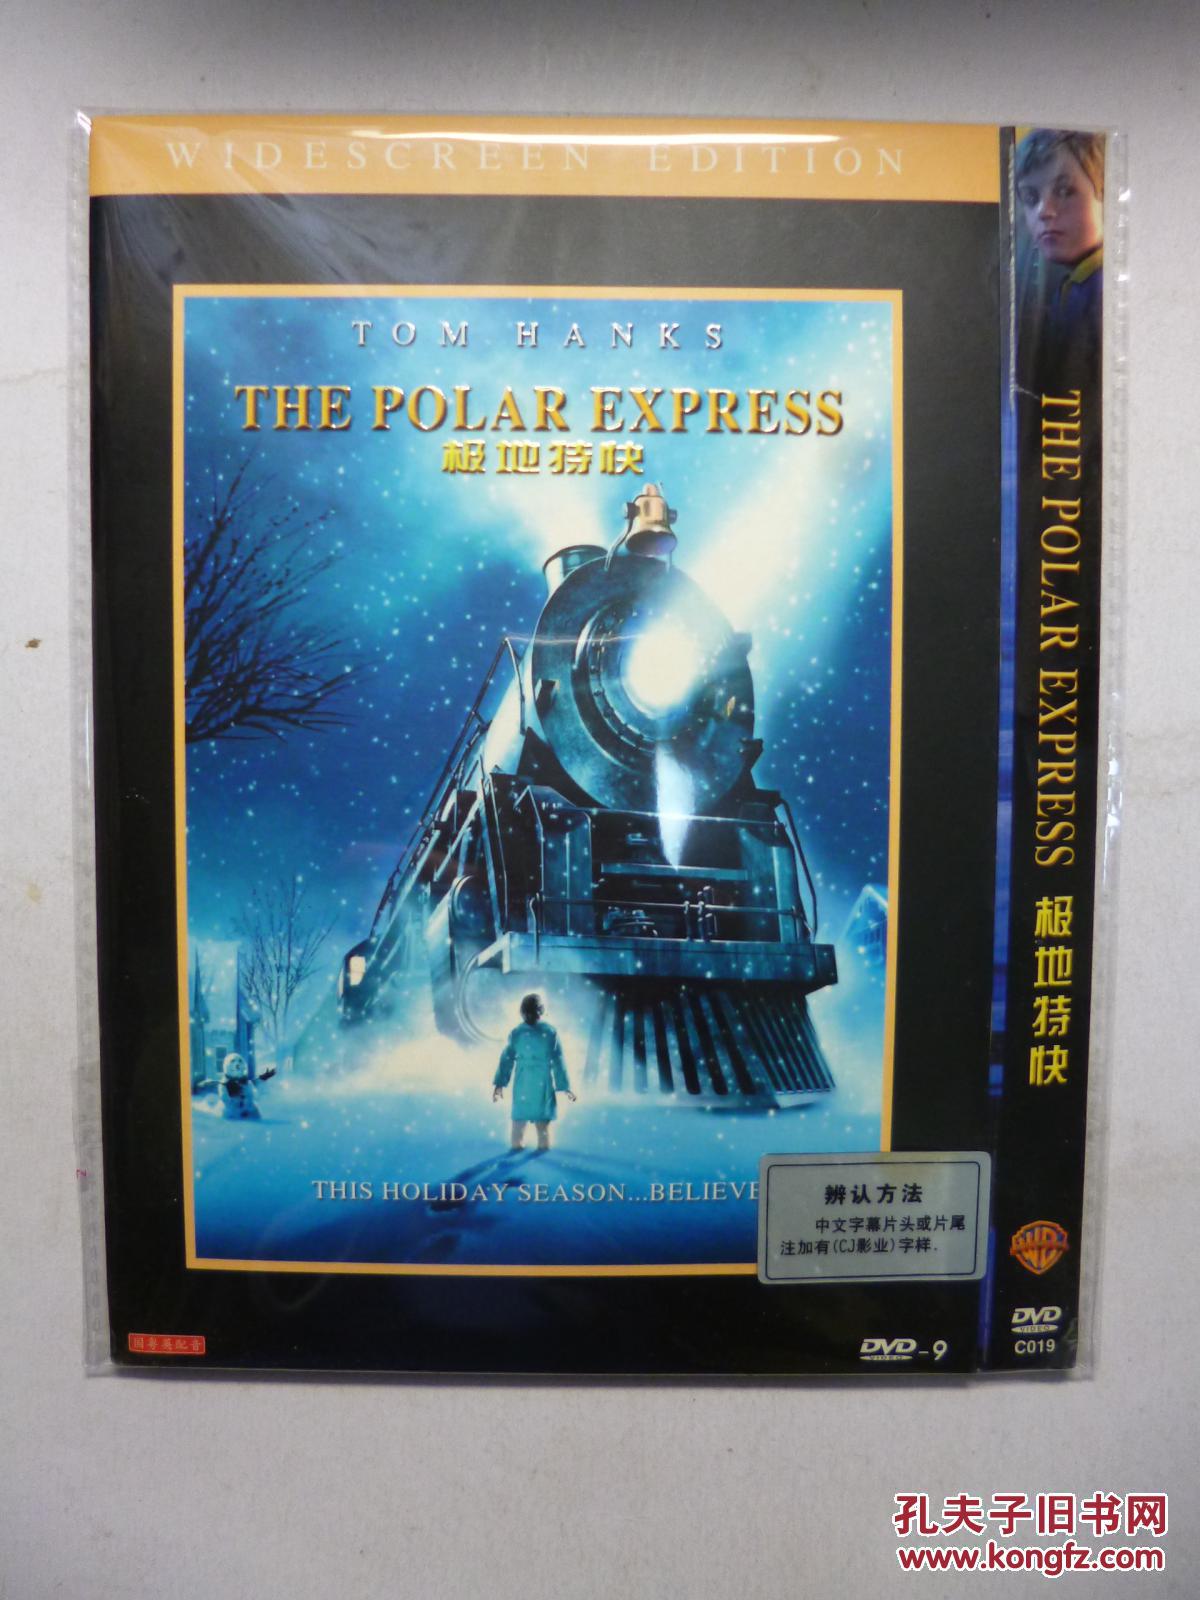 【图】D9 极地特快 The Polar Express 又名: 北